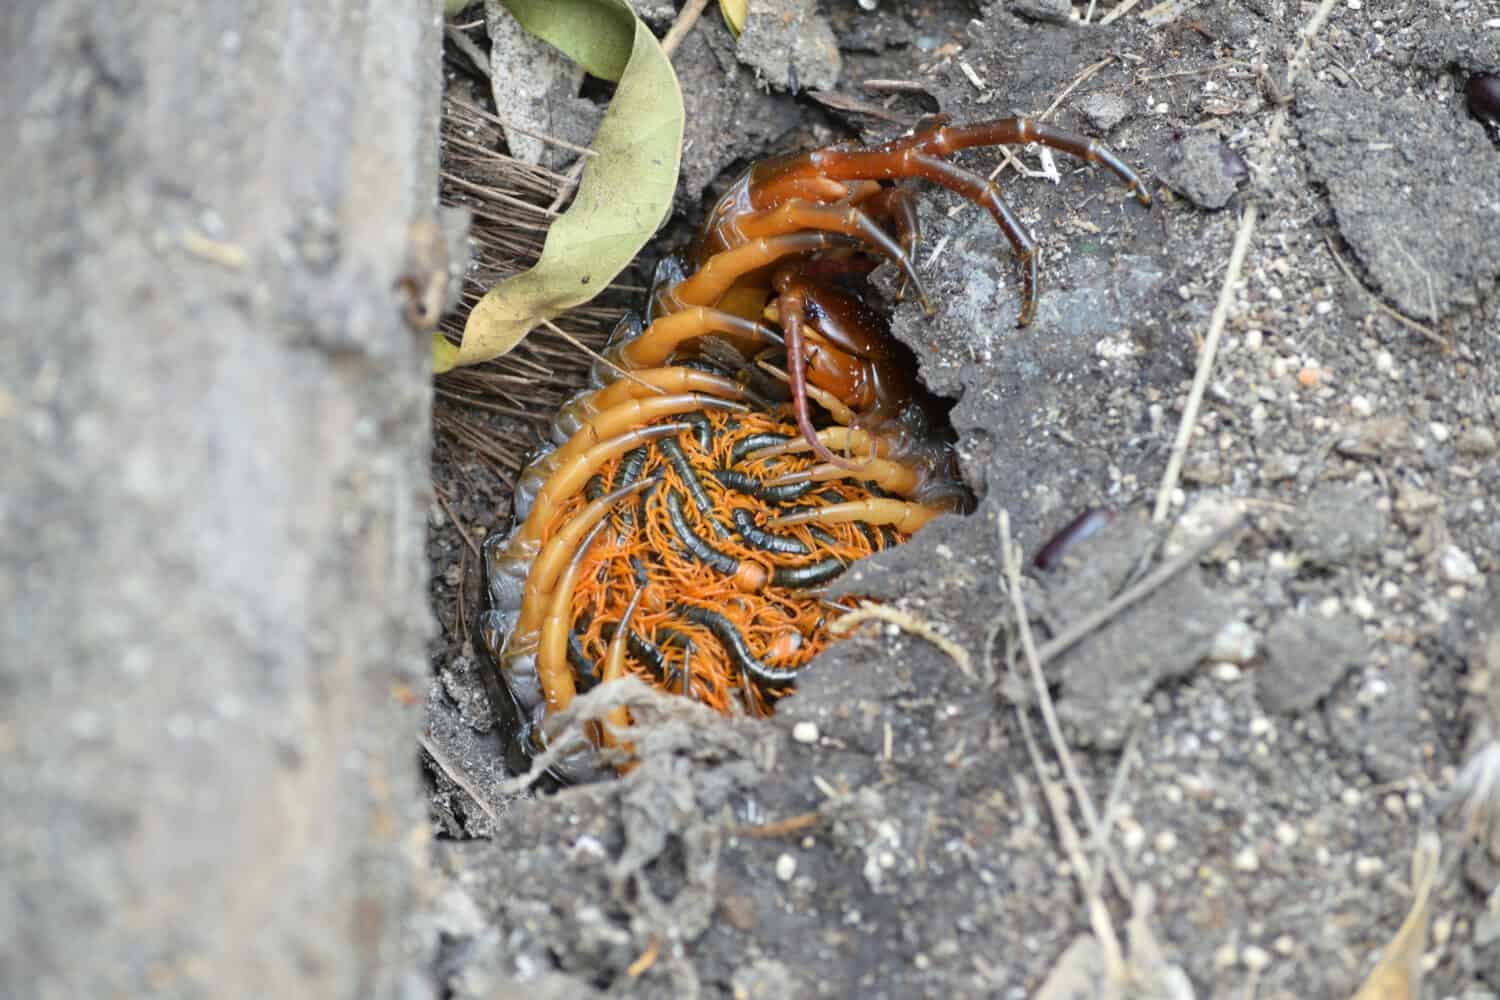 Centopiedi sdraiato con il loro bambino in una buca di argilla.